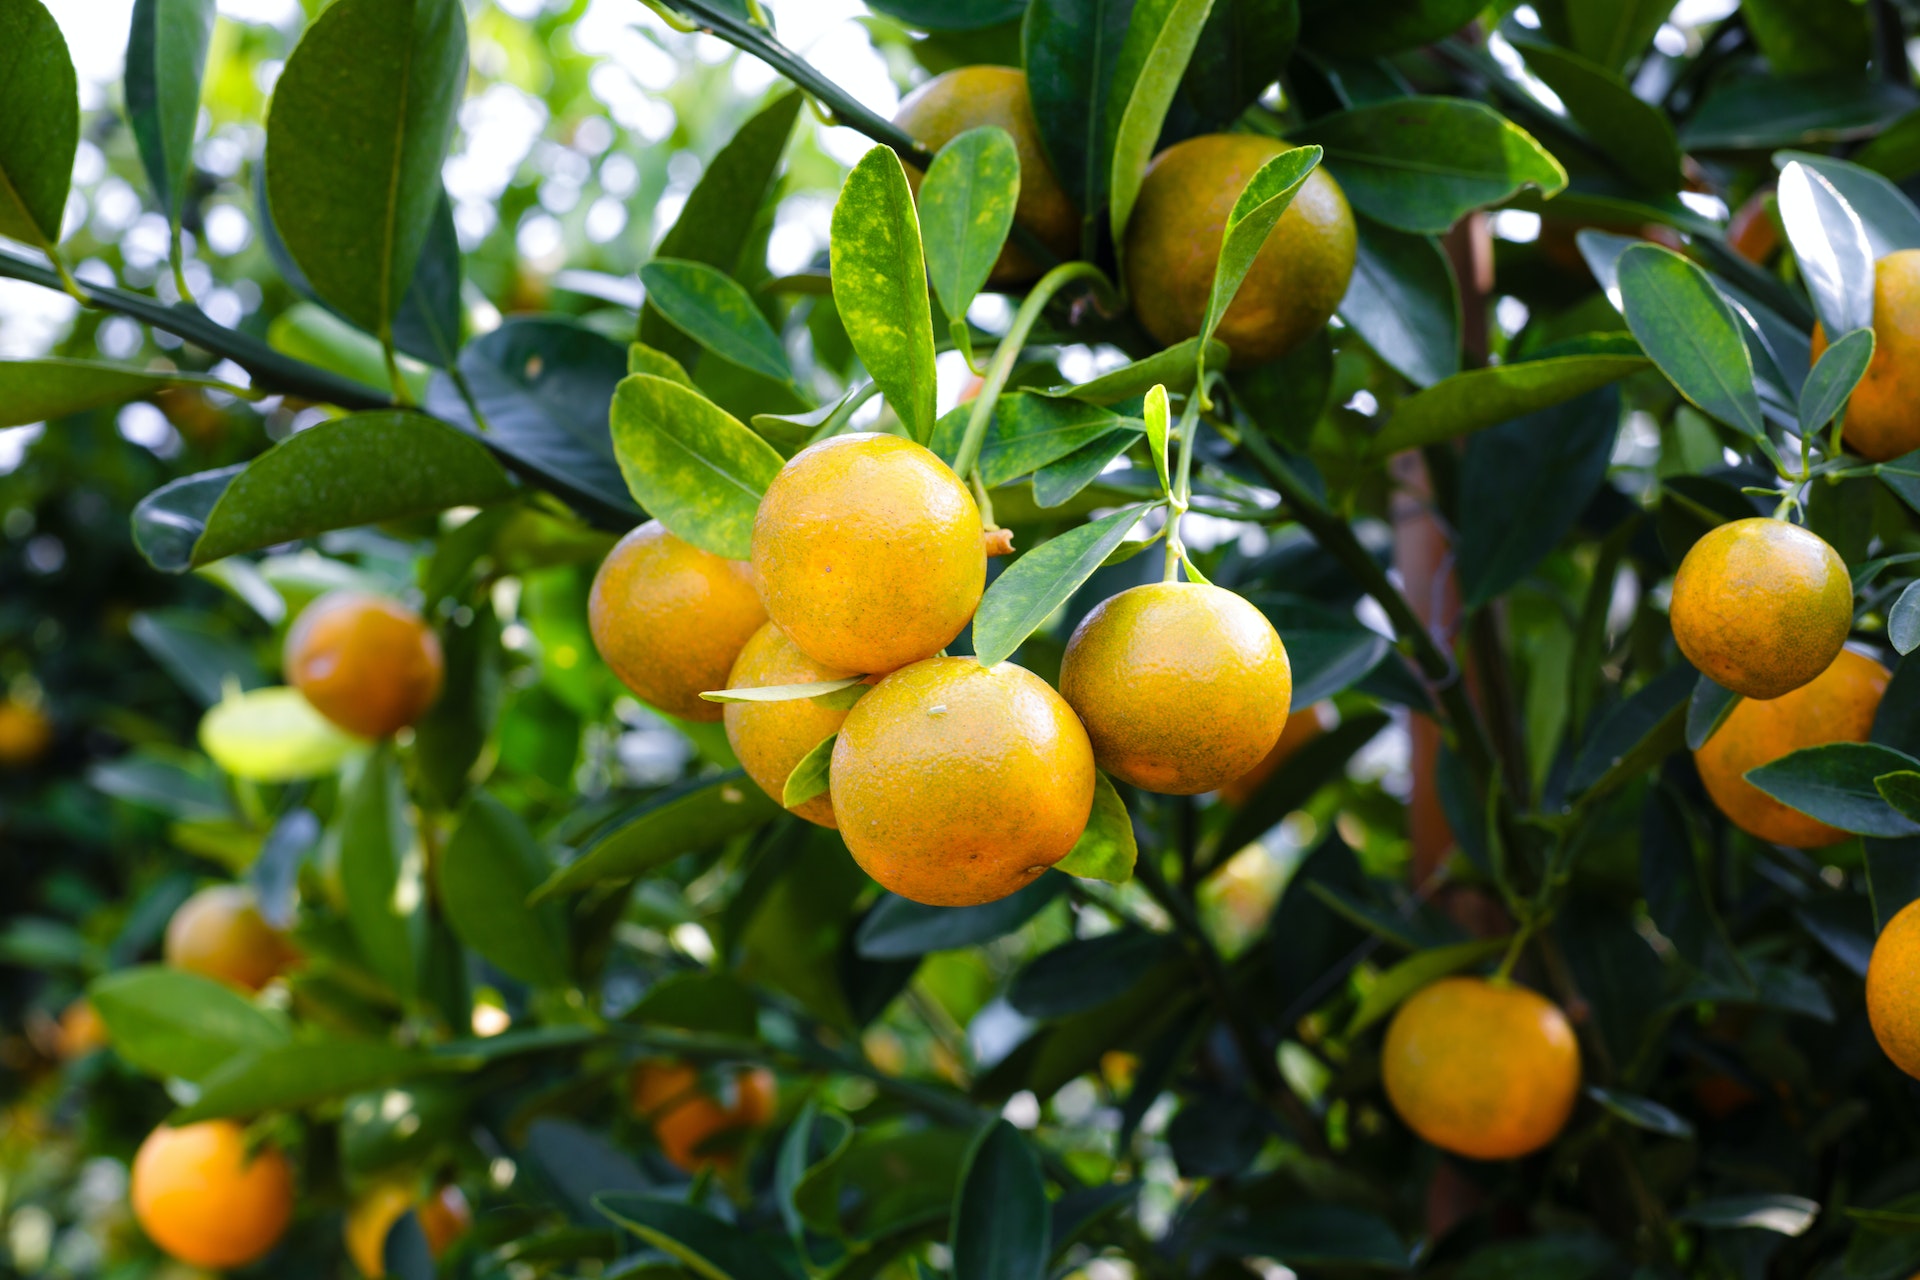 تناول قشور البرتقال فهي غنية بالعديد من العناصر الغذائية